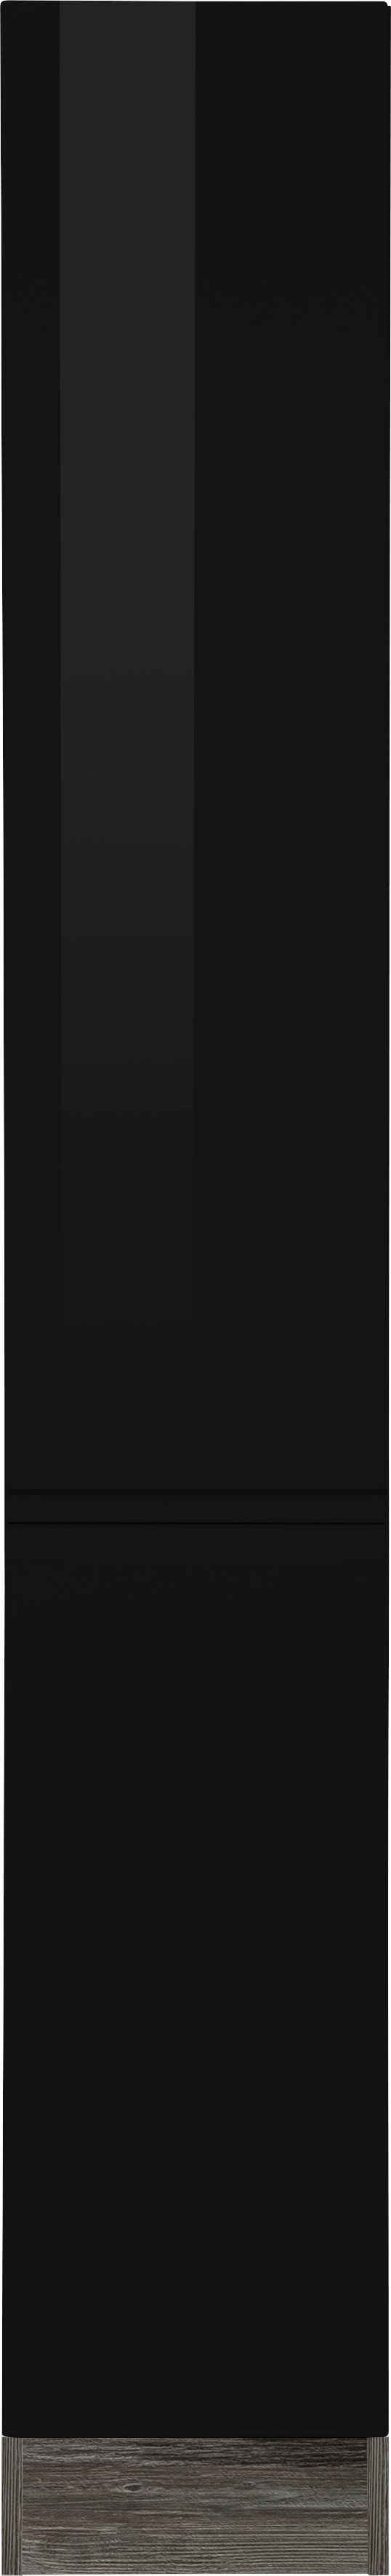 HELD MÖBEL Apothekerschrank »Virginia« 200 cm hoch 30 cm breit, 2 Auszüge mit 5 Ablagen, hochwertige MDF-Fronten, griffloses Design